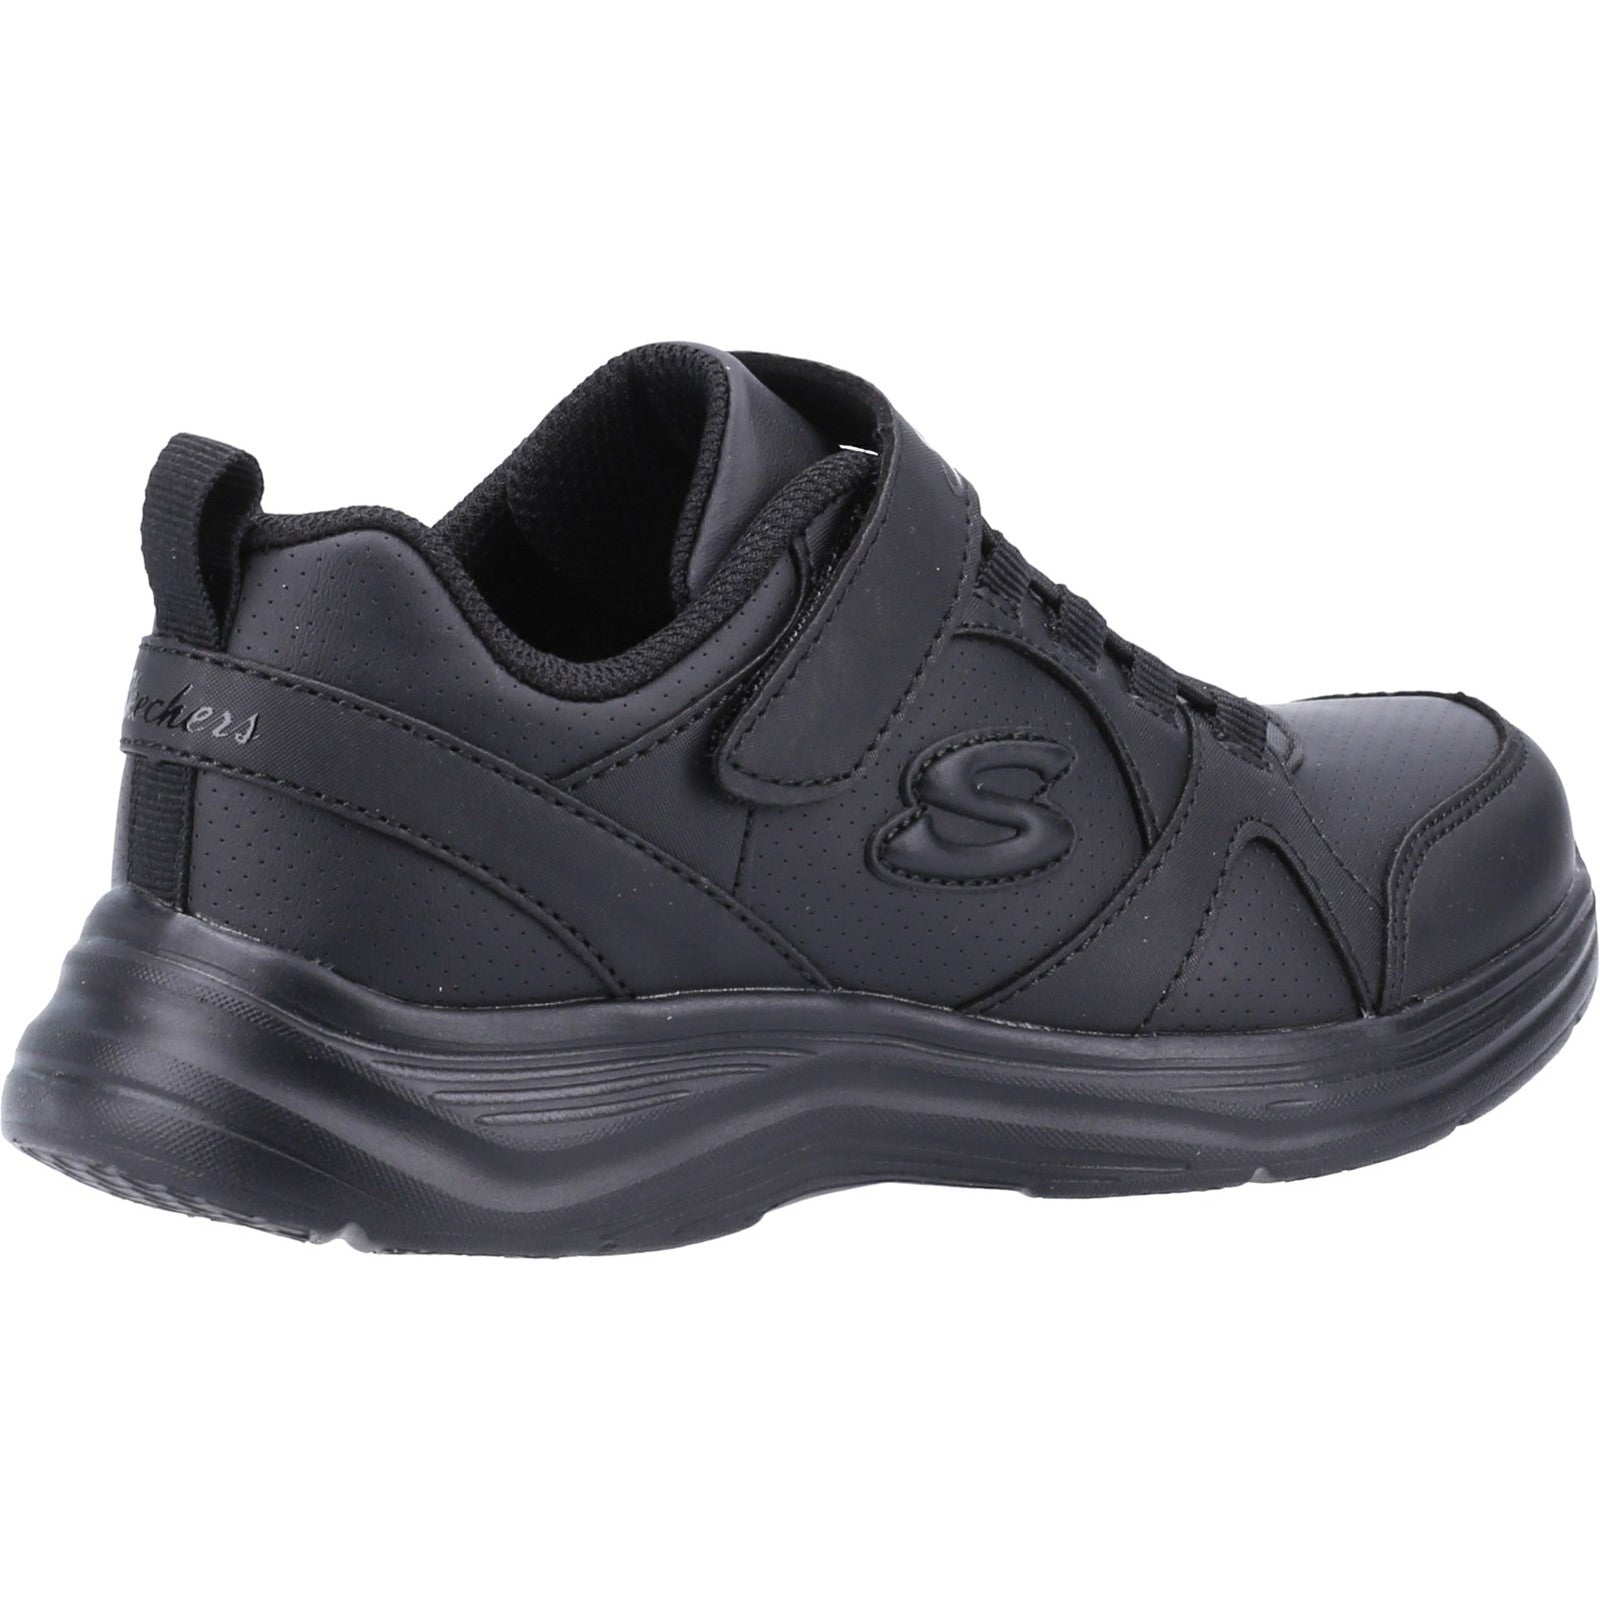 Skechers Girls Glim-K S-Struts School Shoe - Black